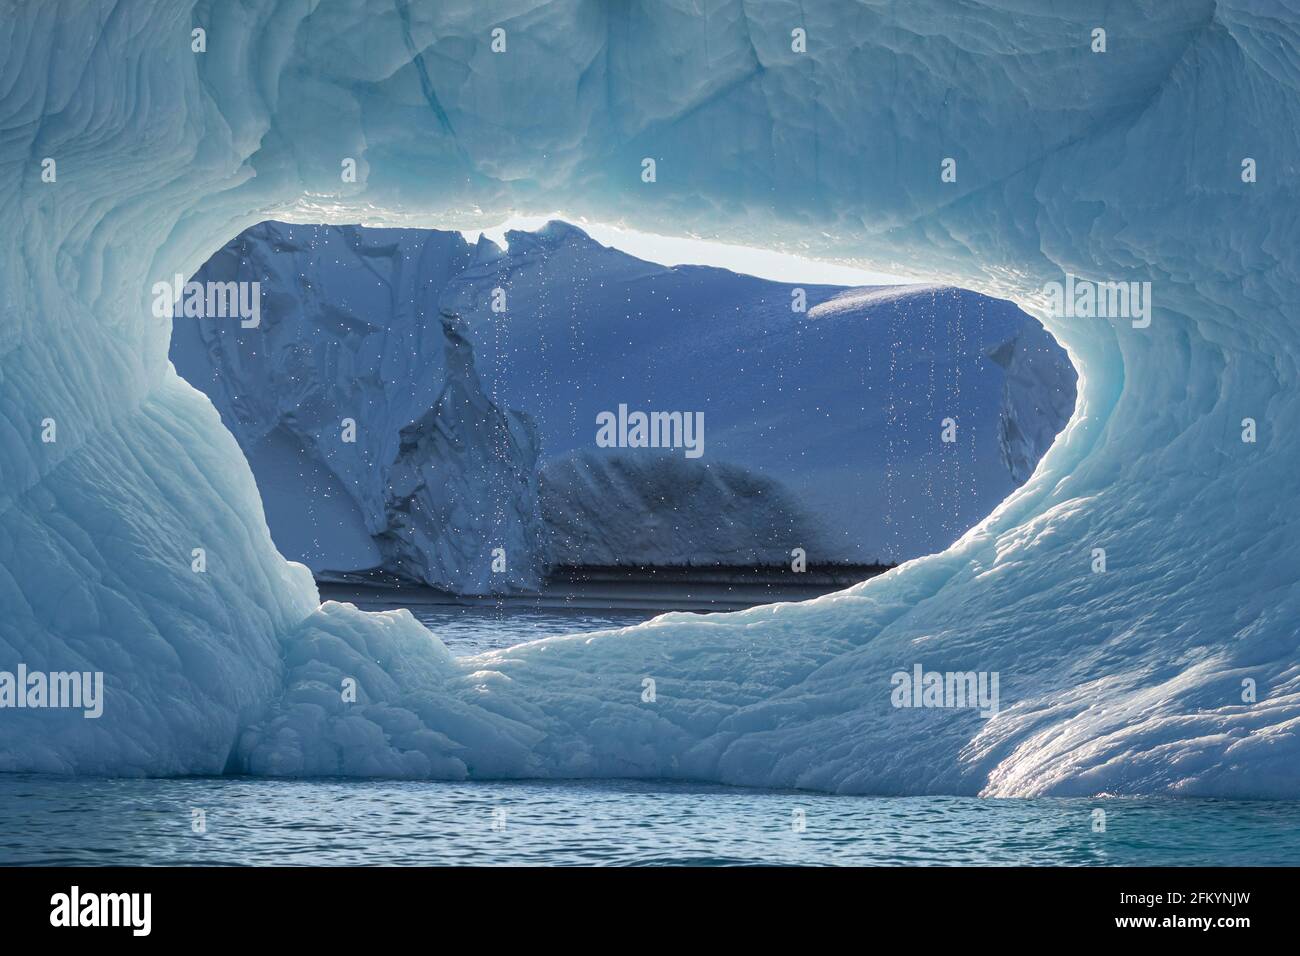 L'iceberg s'est caldé du glacier du Groenland Icecap dans le fjord de Dødes, le fjord des morts, la baie de Baffin, le Groenland. Banque D'Images